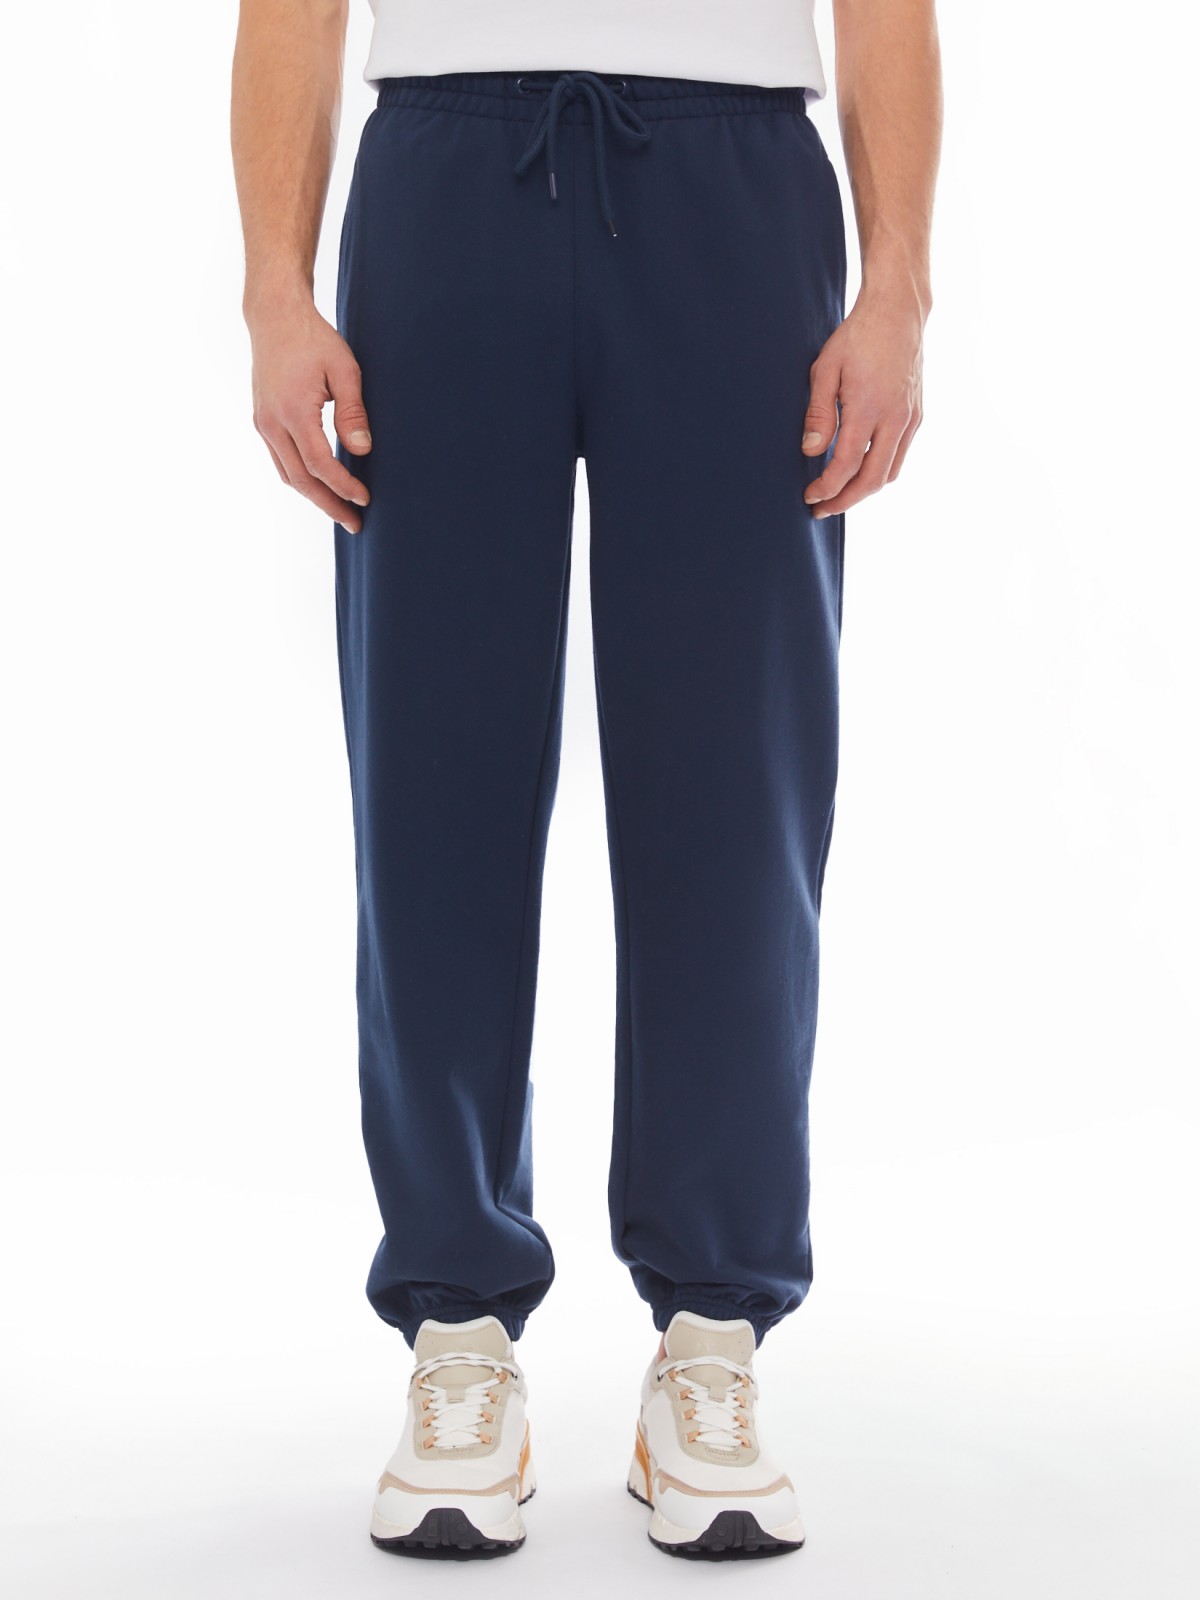 Трикотажные брюки-джоггеры в спортивном стиле zolla 014137660042, цвет синий, размер S - фото 2